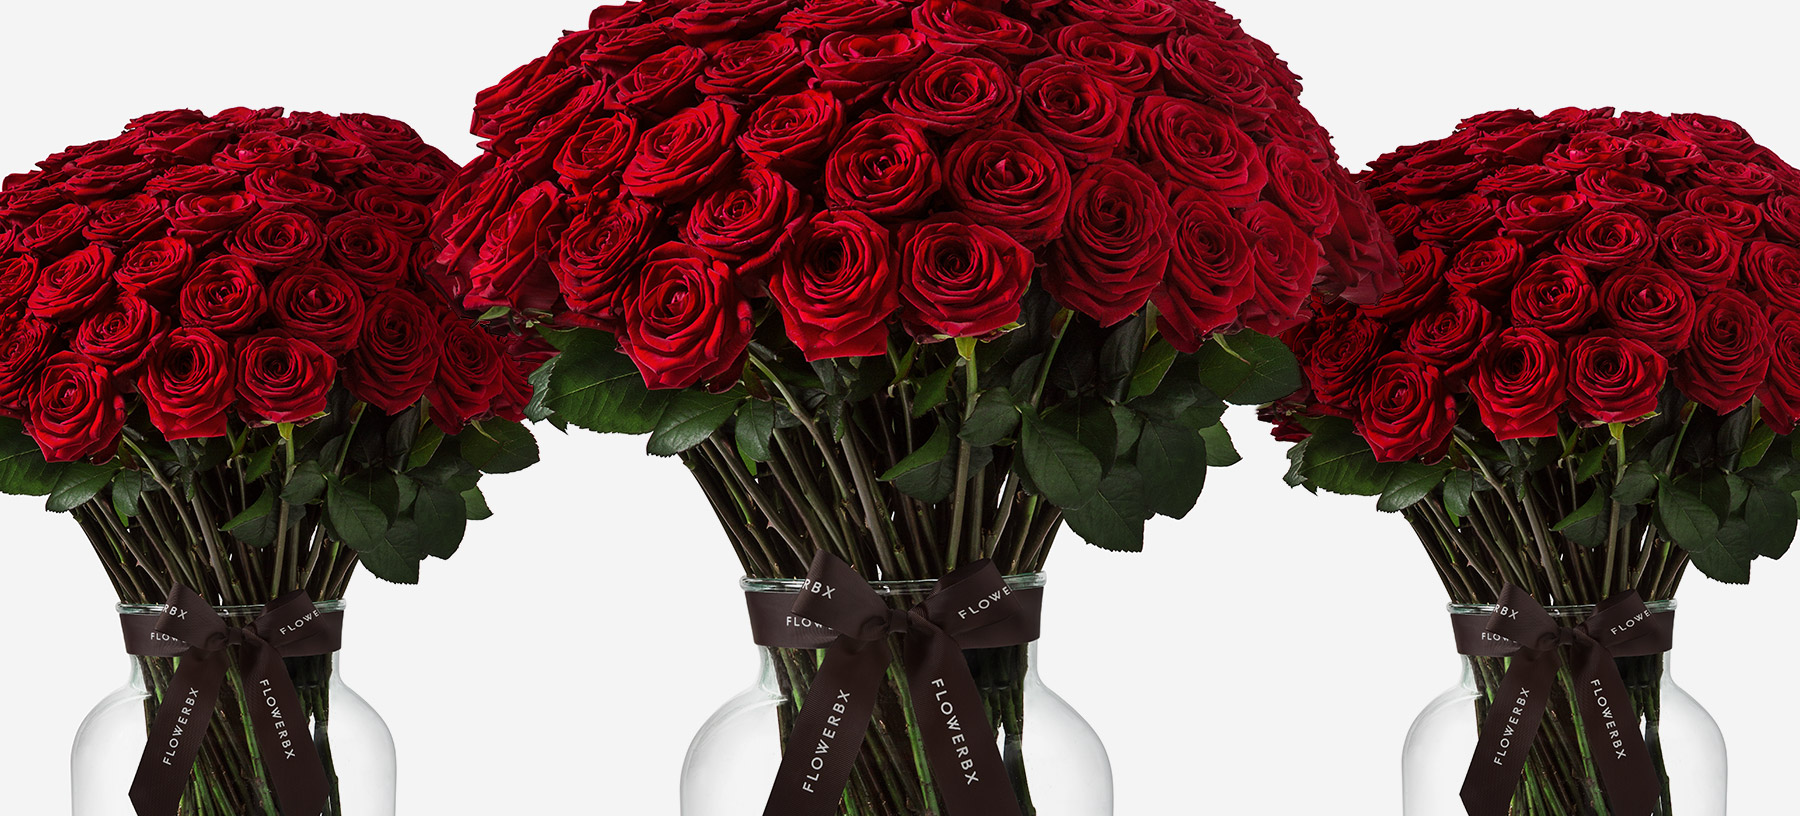 Descubra 100 kuva bouquet de 1000 roses rouges prix - Thptnganamst.edu.vn